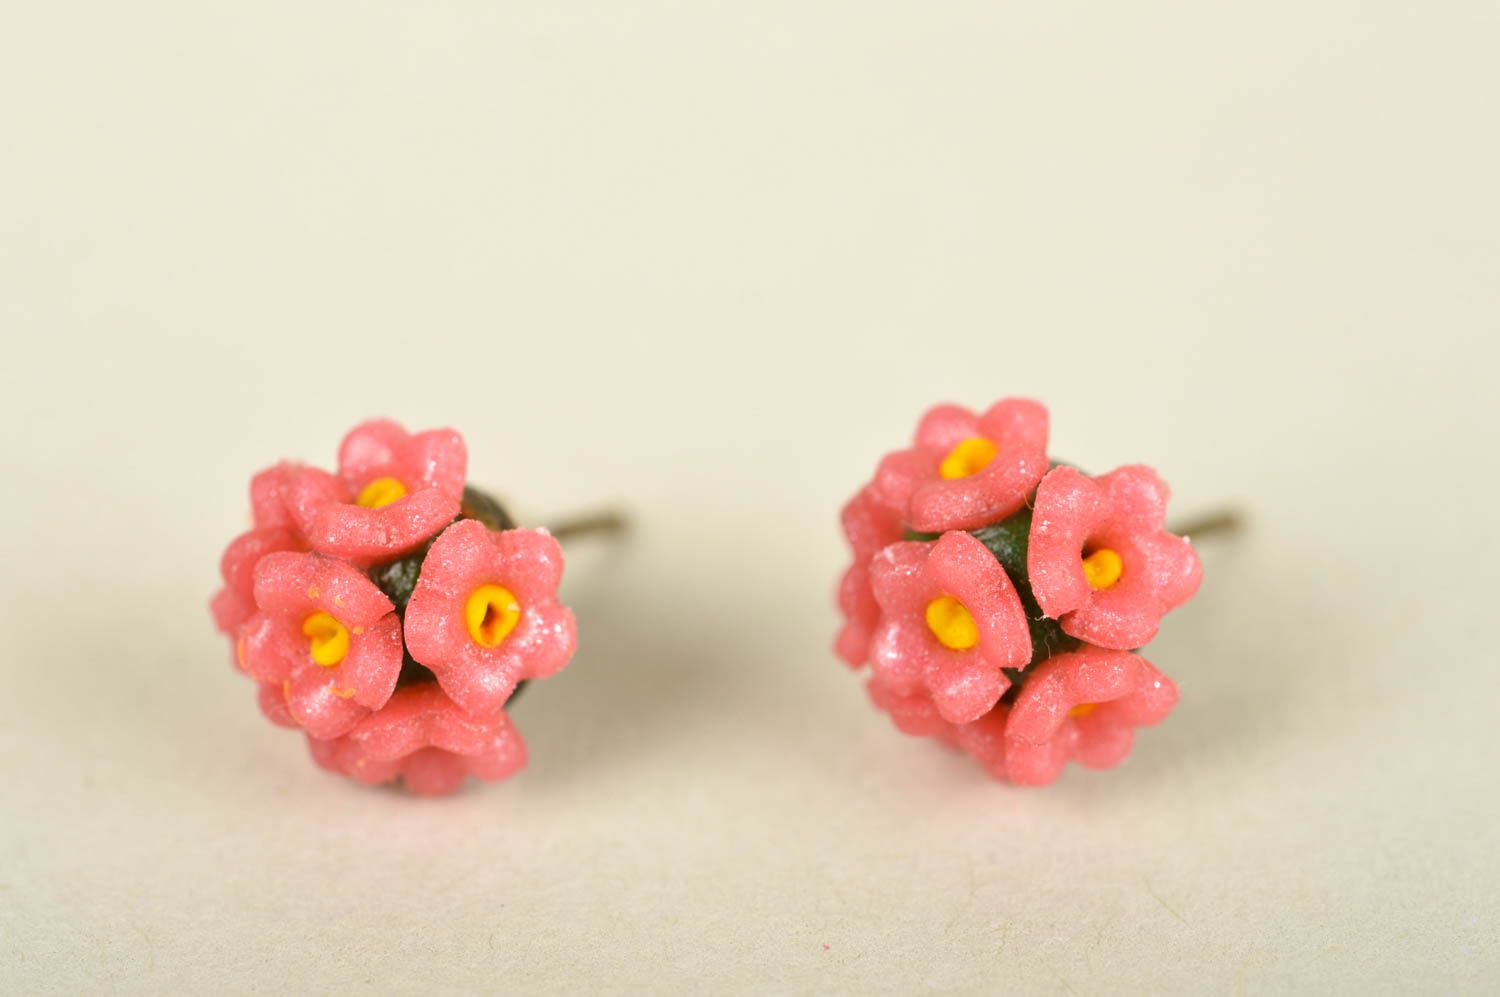 Handmade womens plastic earrings flower stud earrings artisan jewelry gift ideas photo 2